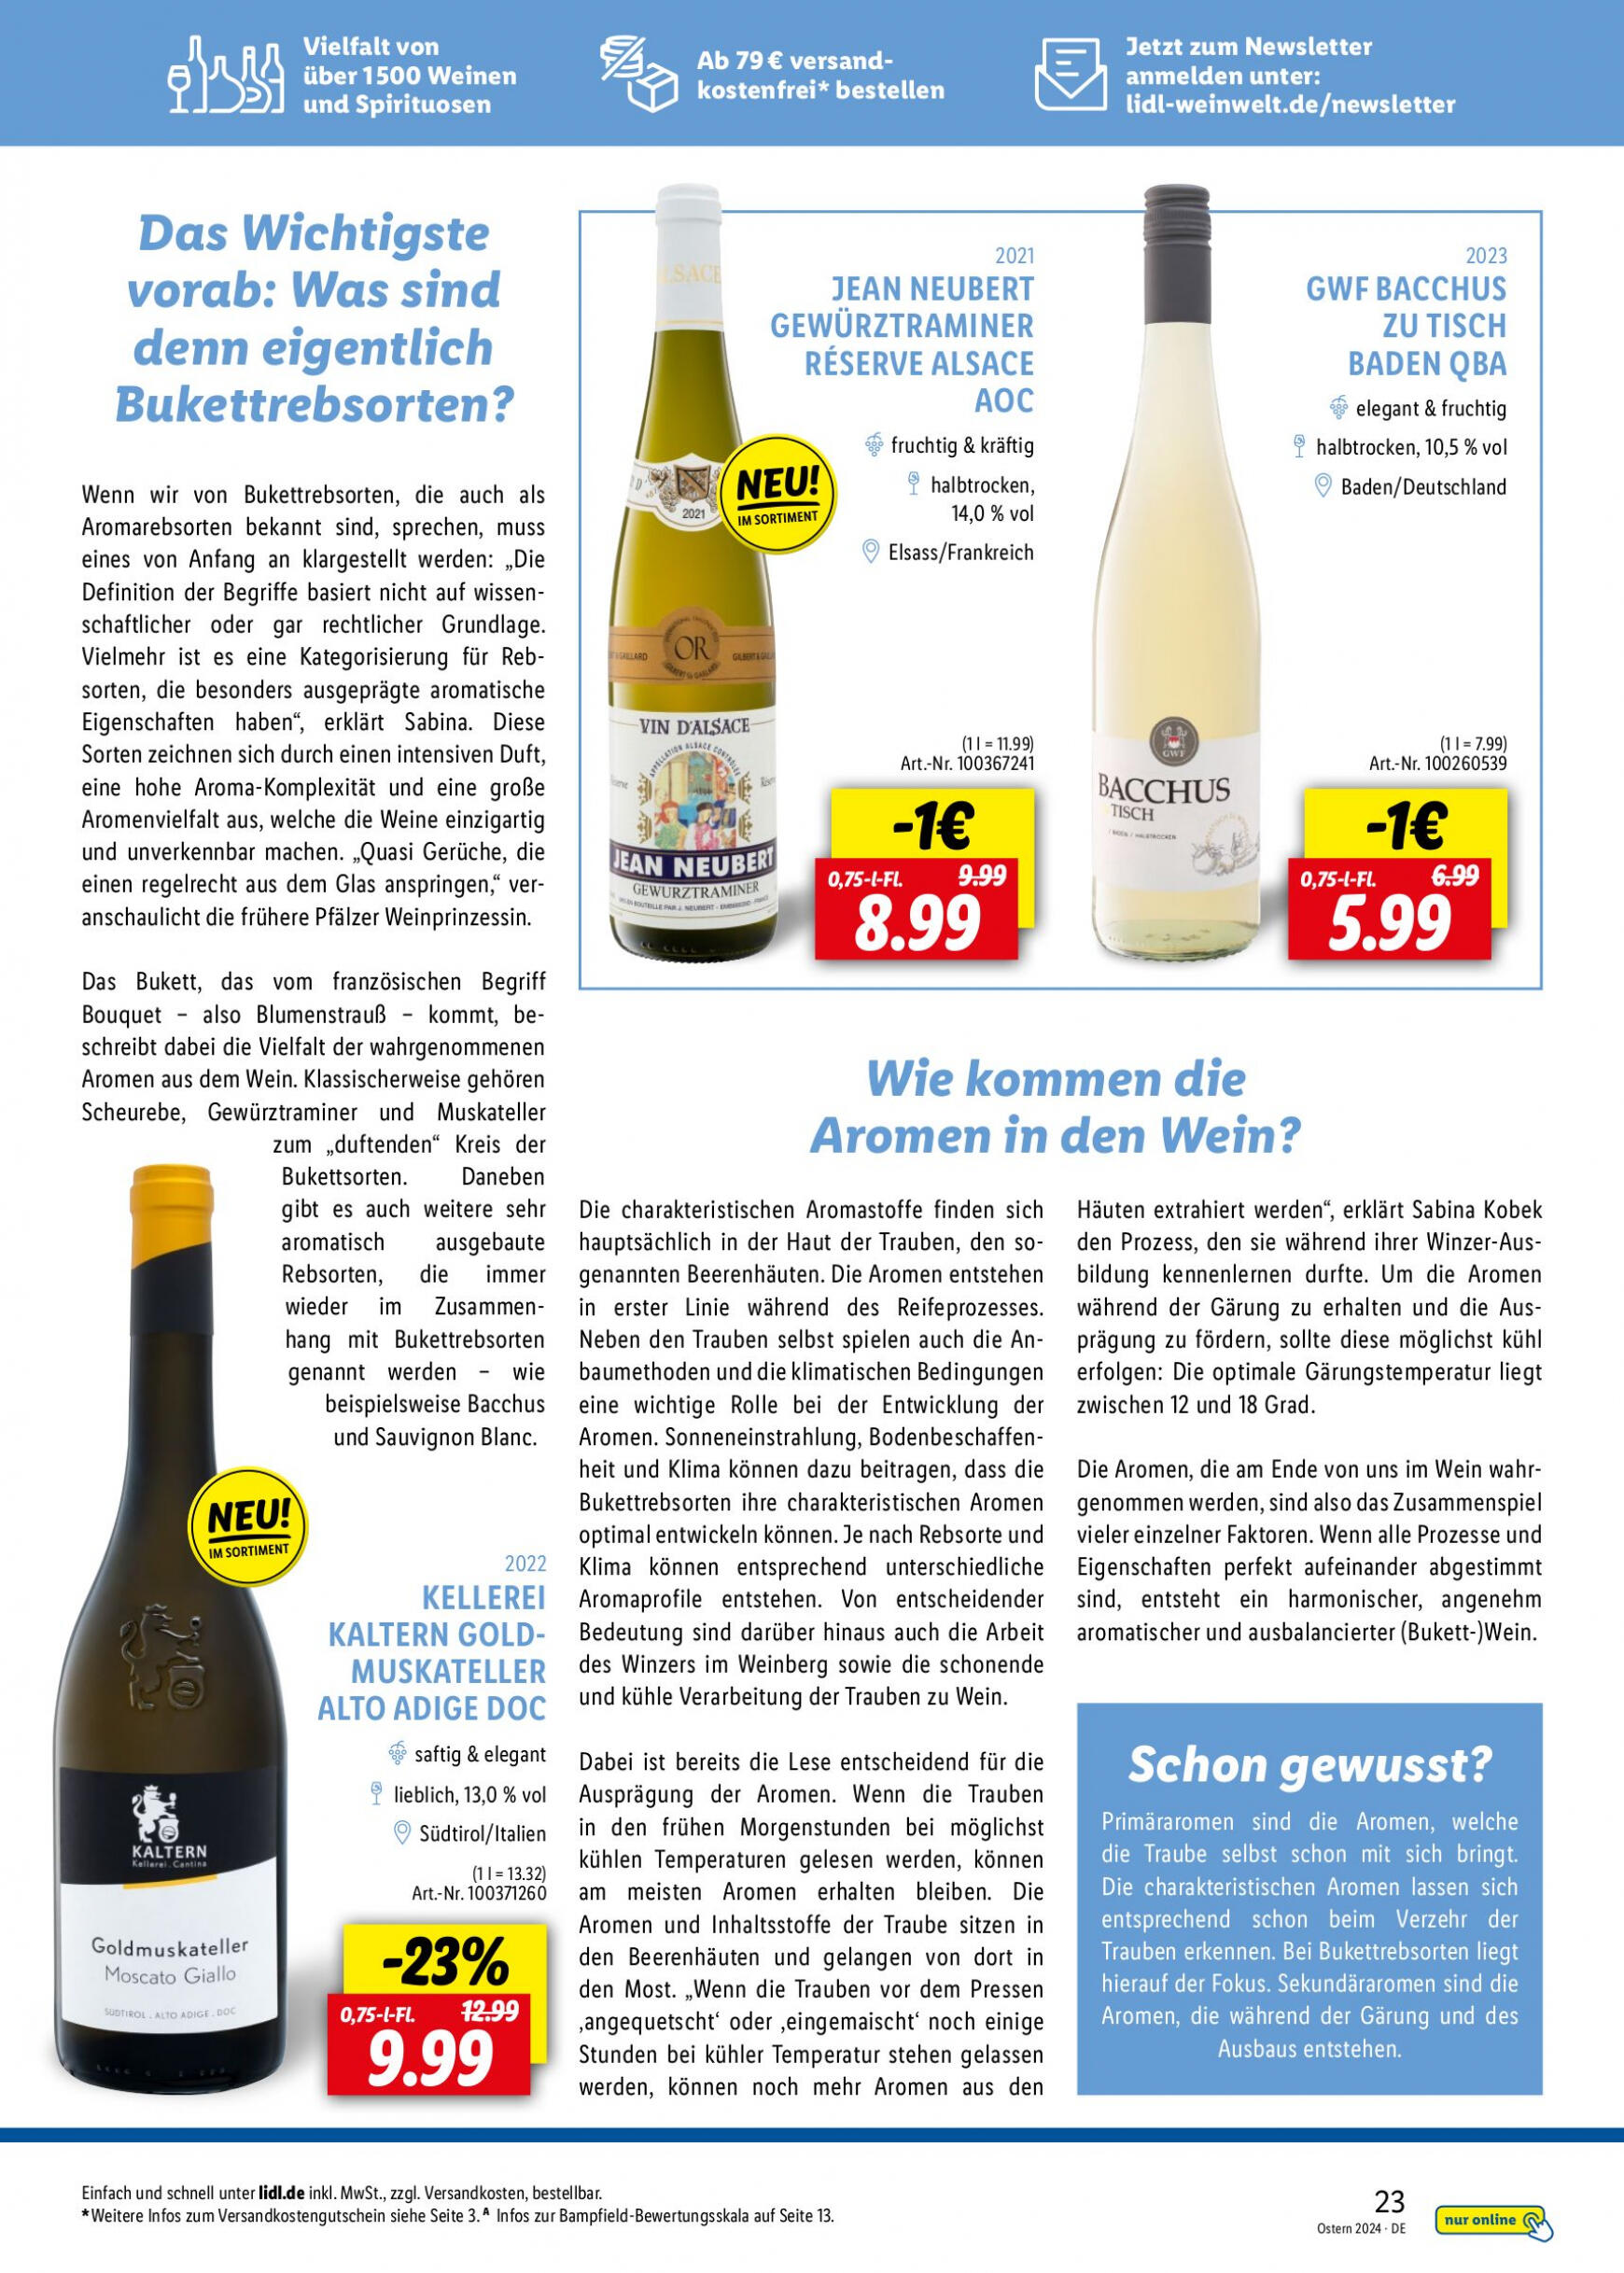 lidl - Flyer Lidl - Wein Entkorkt aktuell 04.03. - 30.04. - page: 23